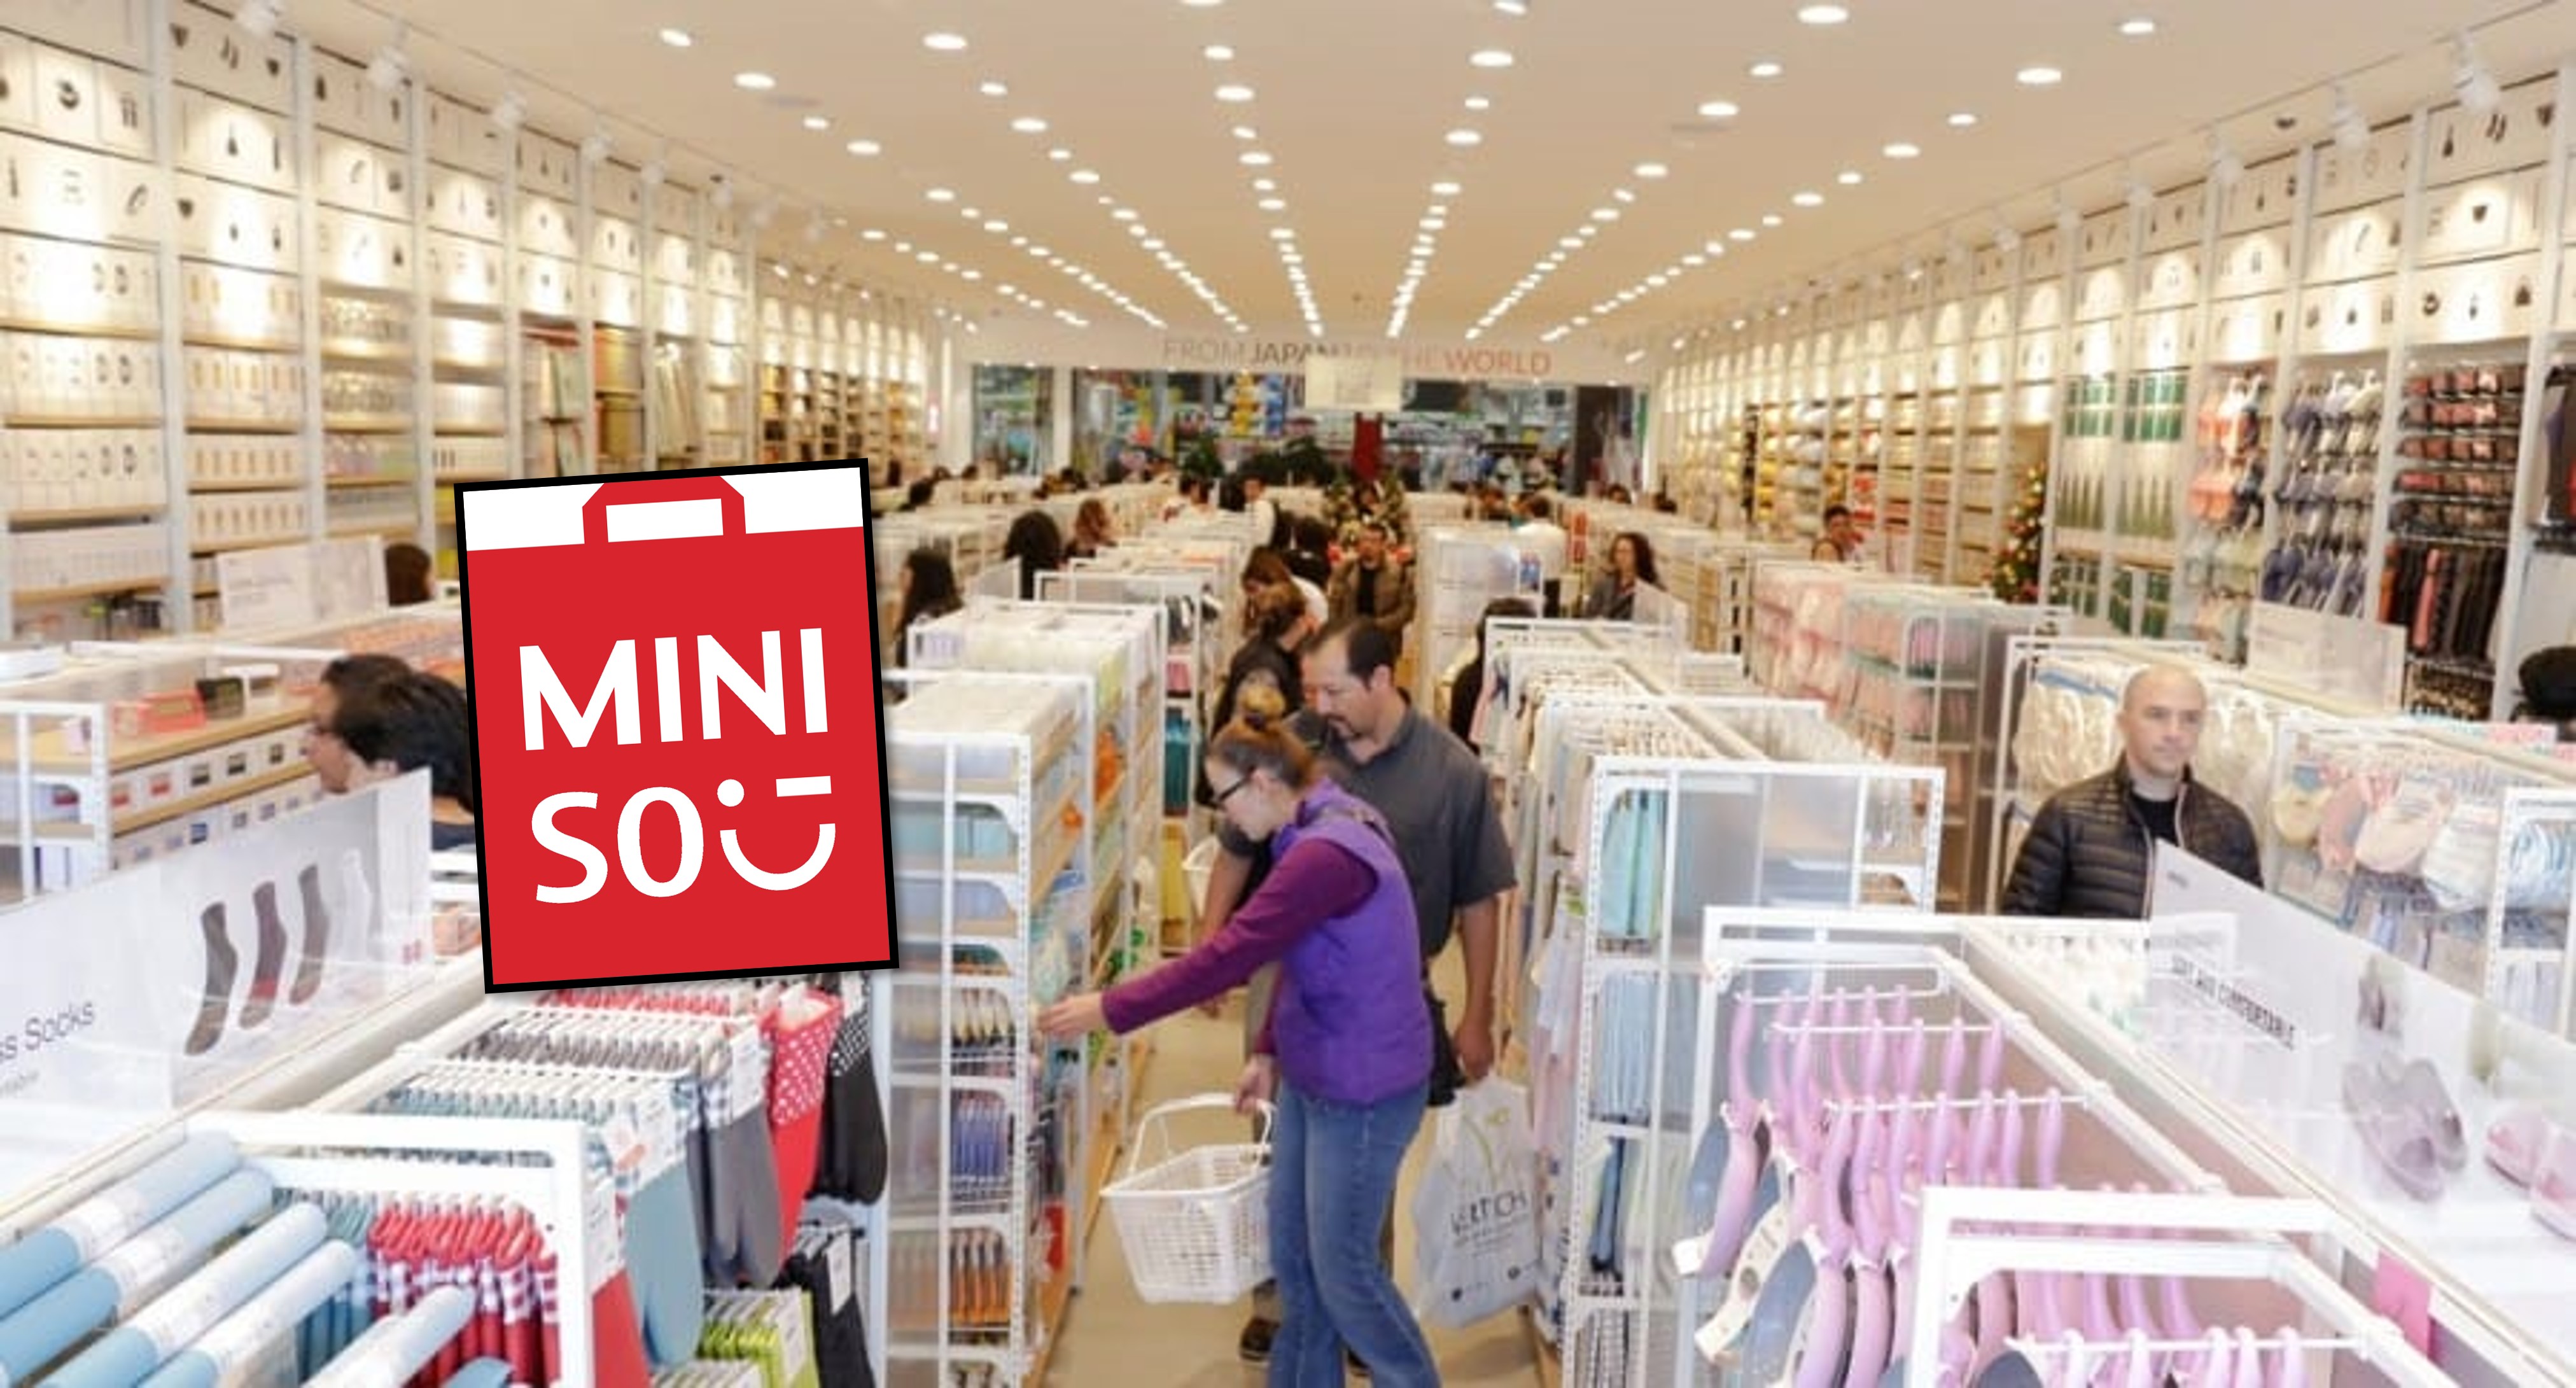 Miniso en Colombia es uno de los negocios que más crece. Poner una tienda de la marca cuesta casi 700 millones de pesos.